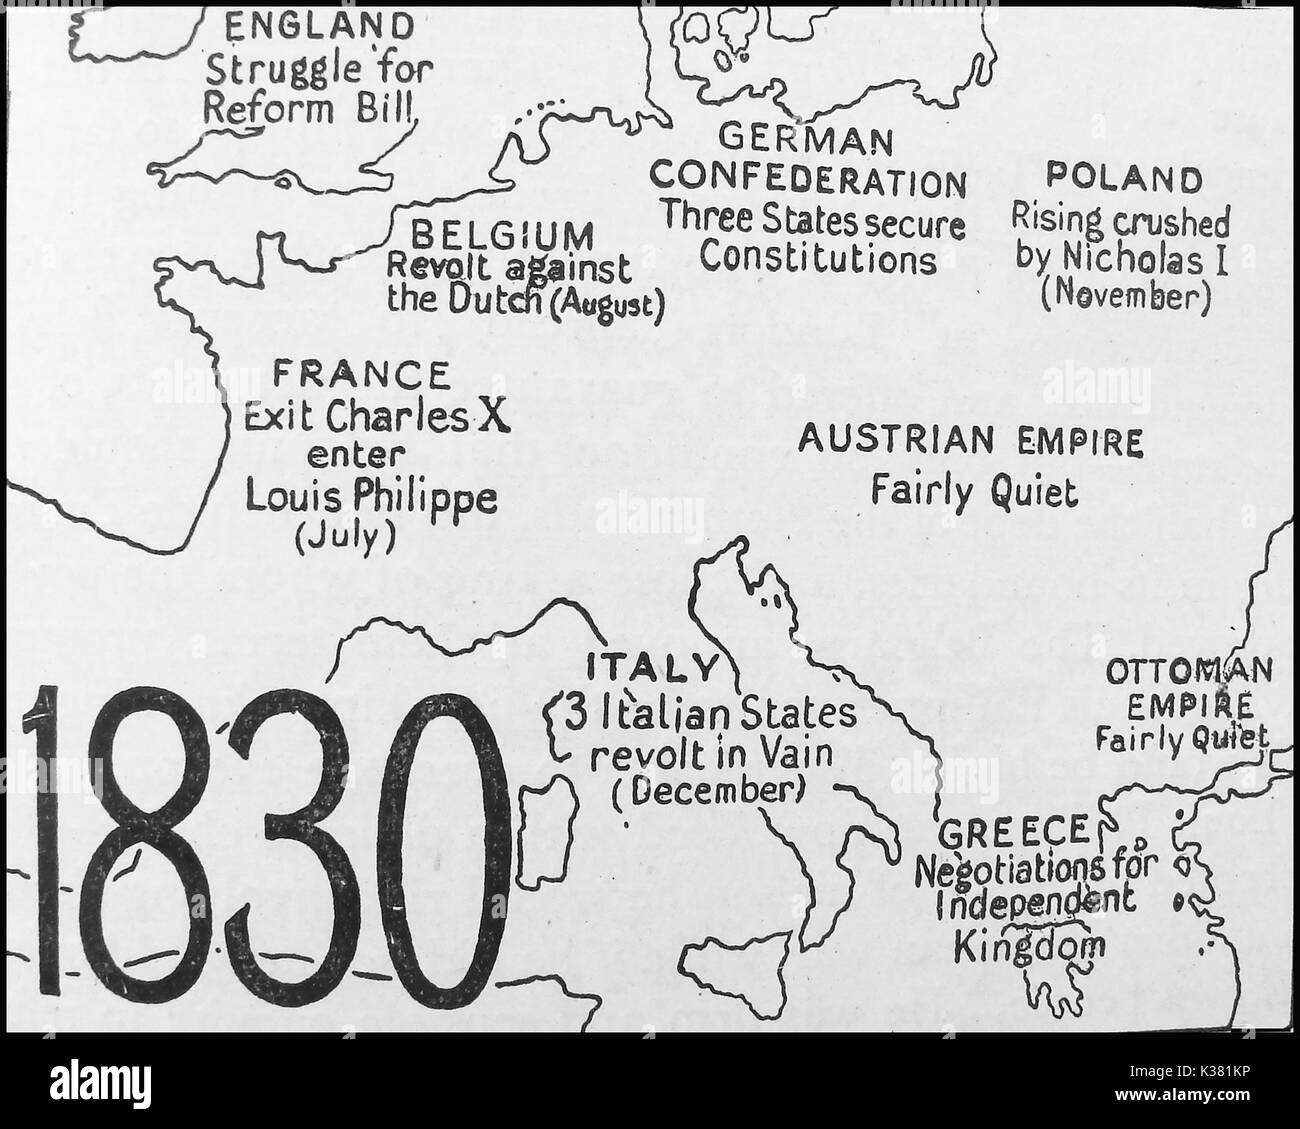 Eine politische Landkarte der Zustand Europas 1830 - England - Belgien - Frankreich - Deutschen Bundes - Polen - Österreich - Italien - Griechenland - Osmanisches Reich Stockfoto